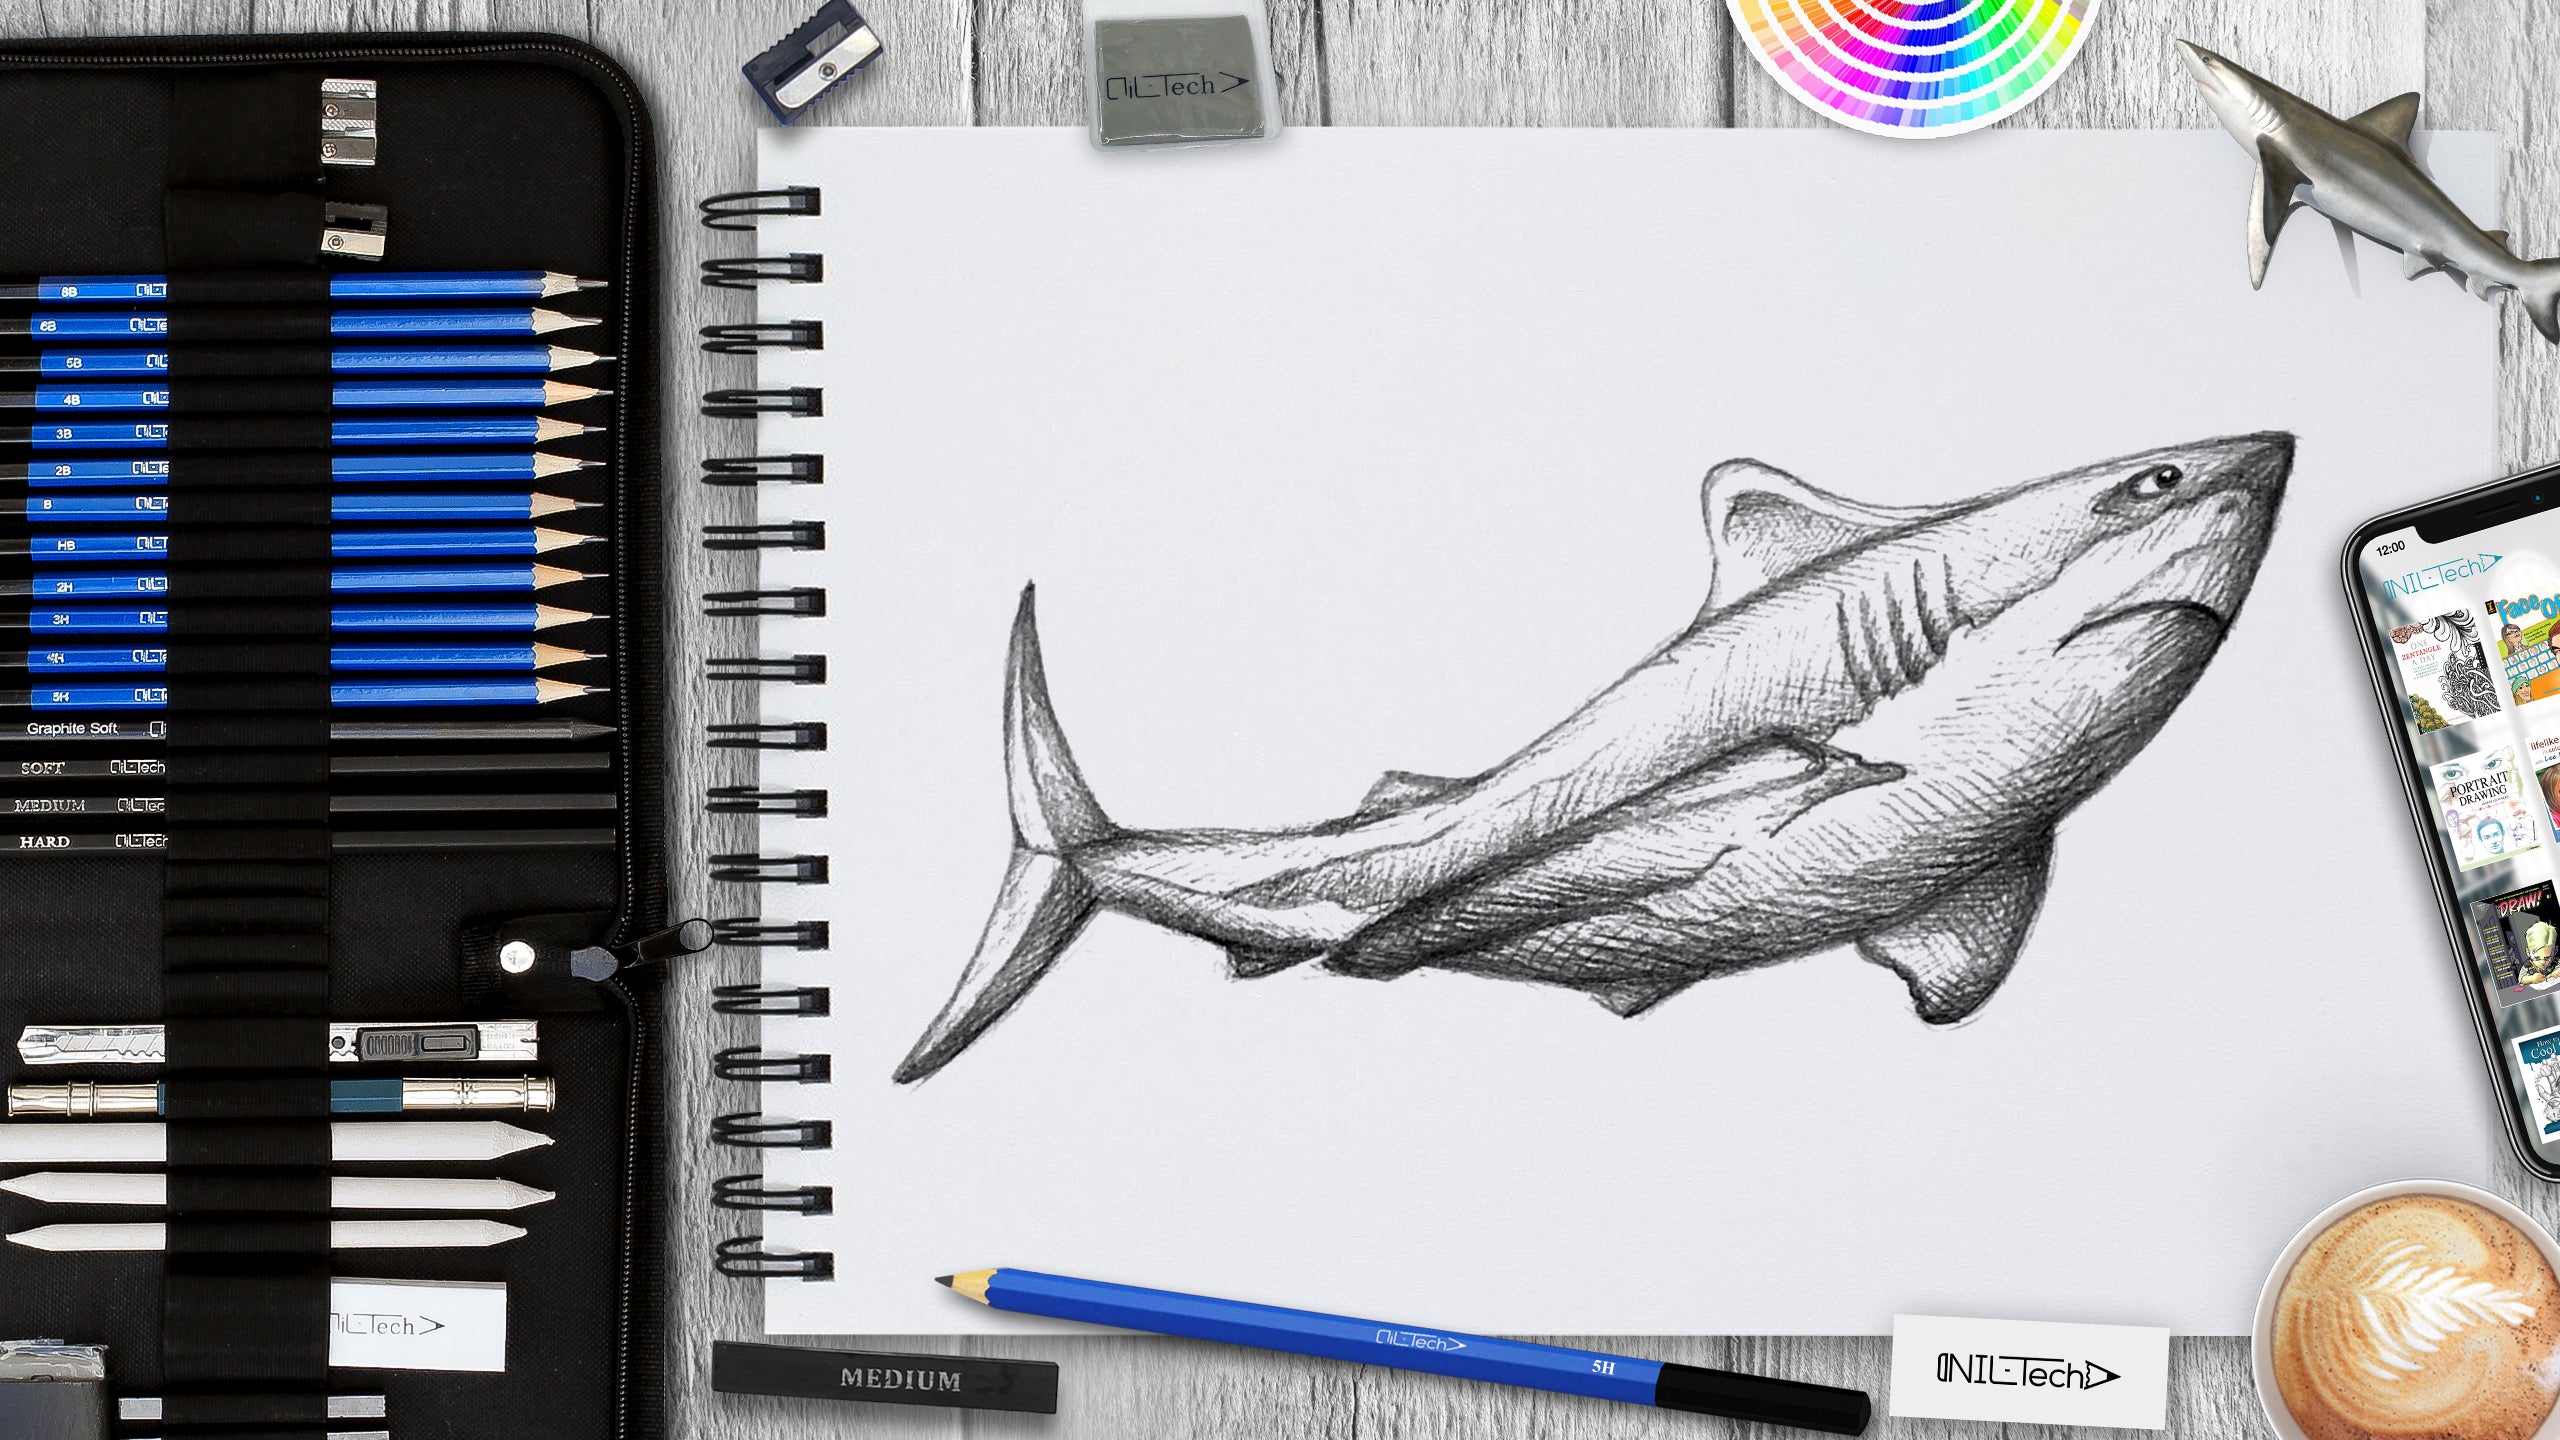 shark drawings in pencil